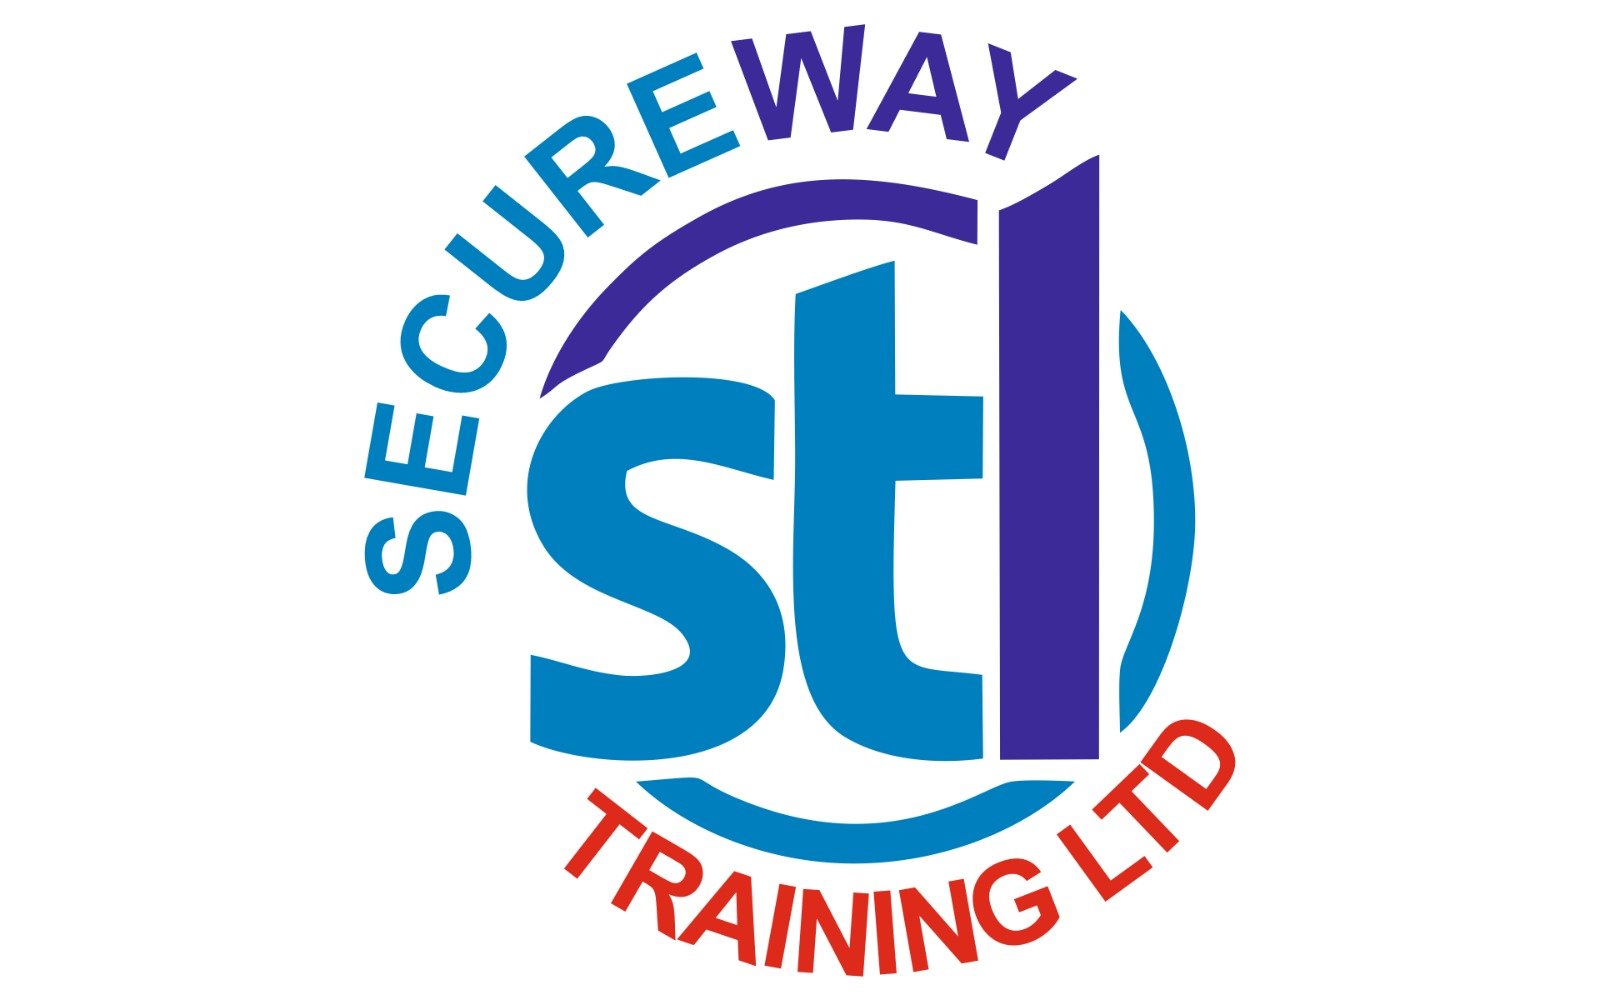 Secureway Training logo